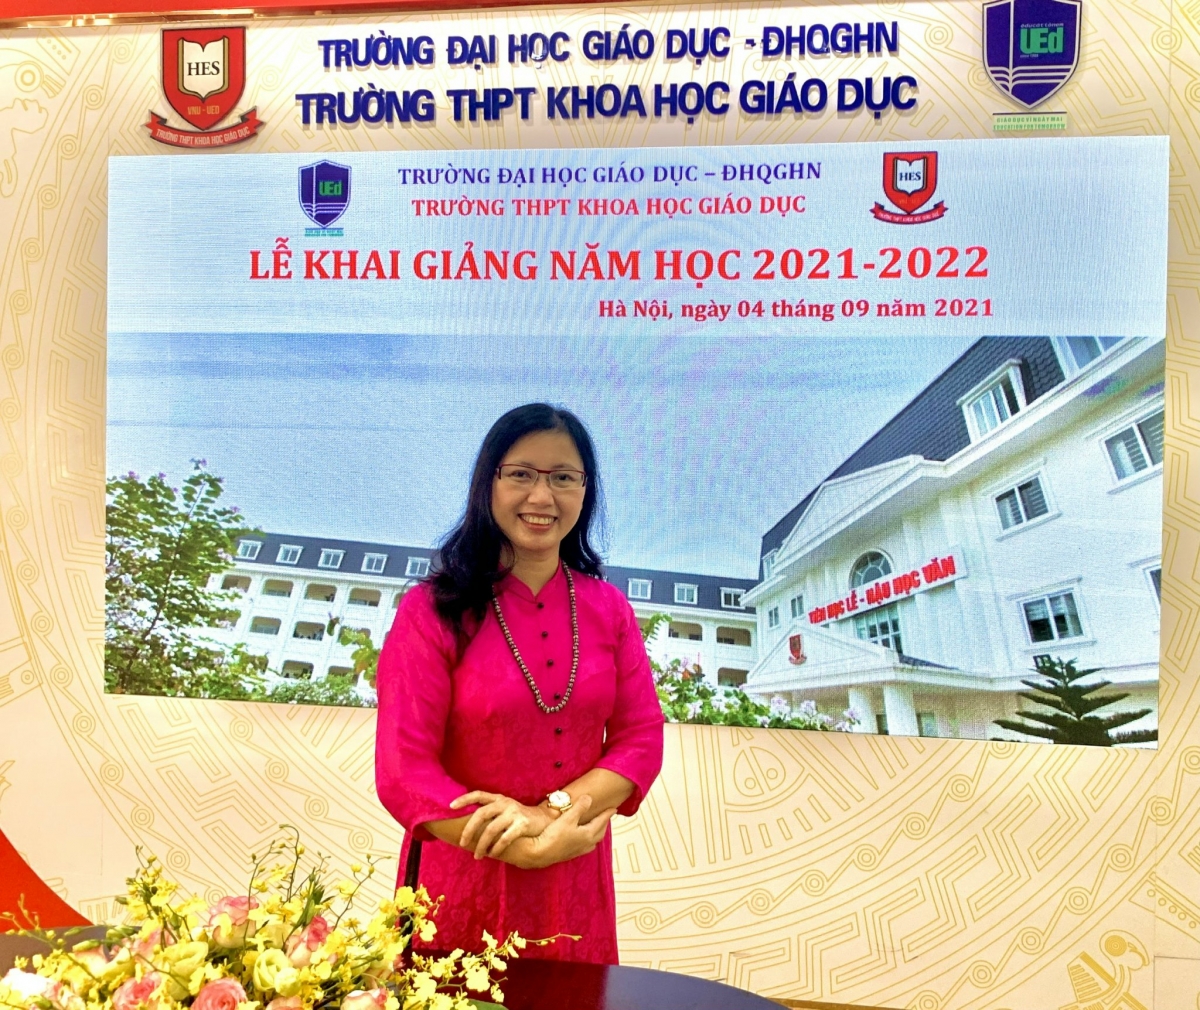 Bà Hoàng Thu Hà, Phó Hiệu trưởng trường THPT Khoa học Giáo dục, thuộc Đại học Giáo dục, Đại học Quốc Gia Hà Nội